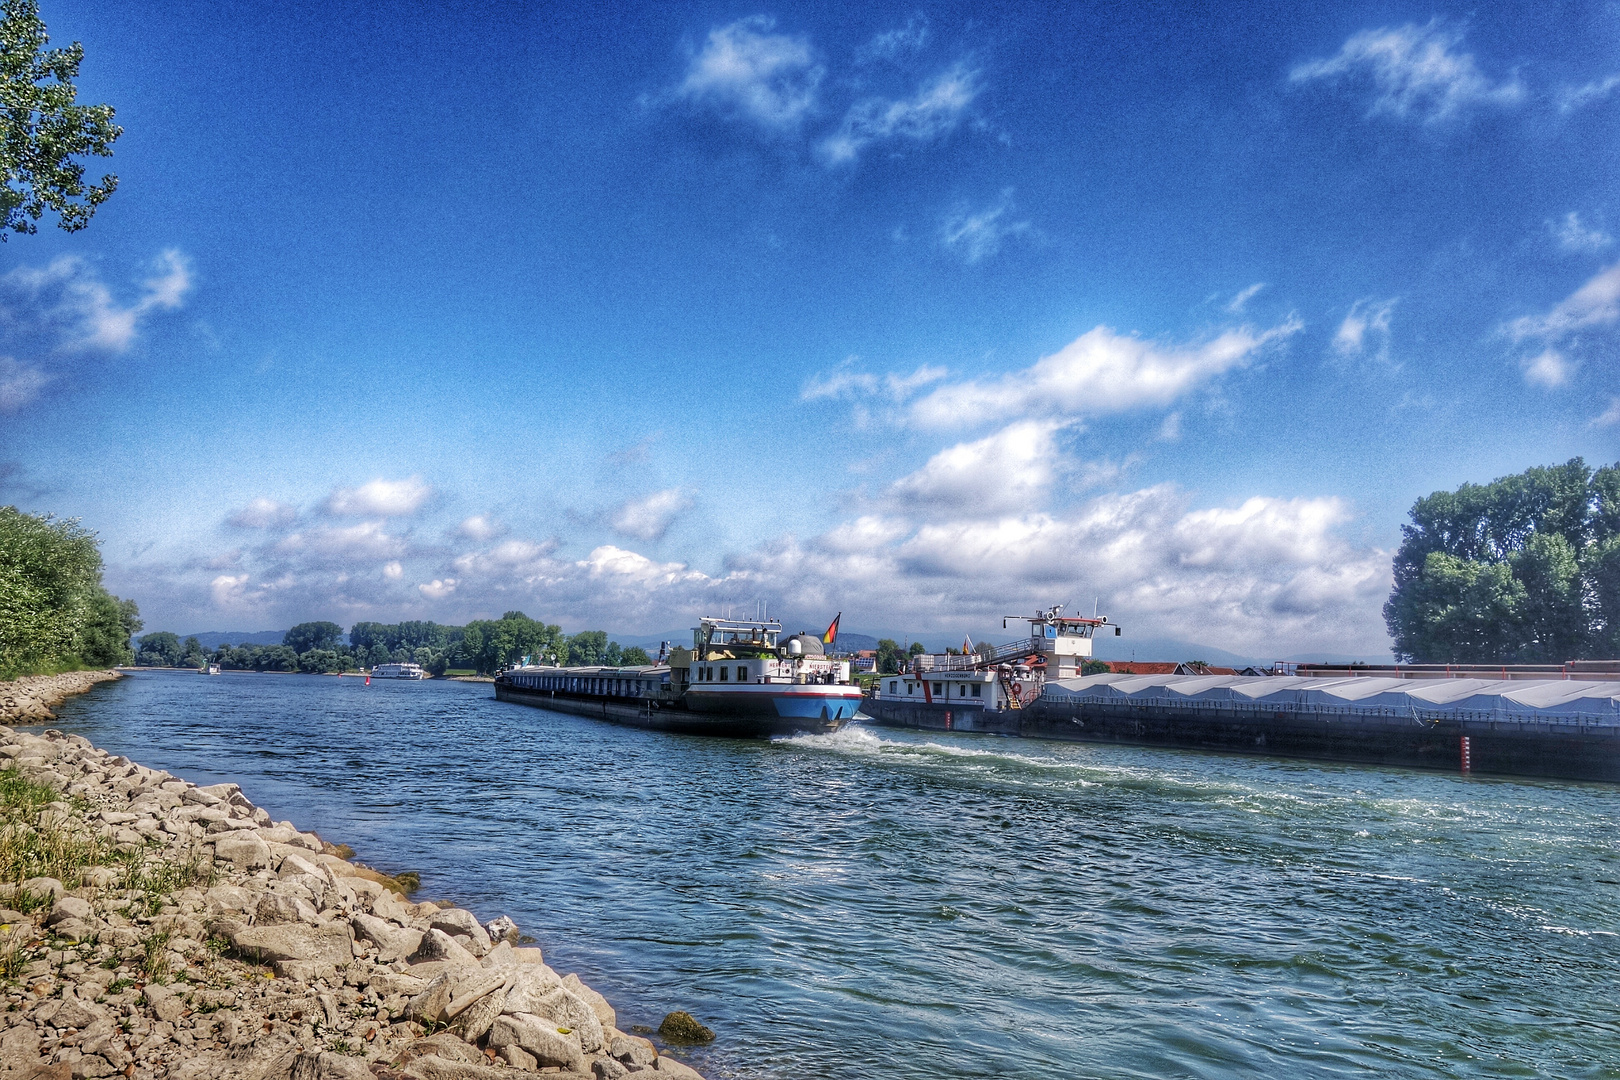 Frachtschiffrennen auf der Donau